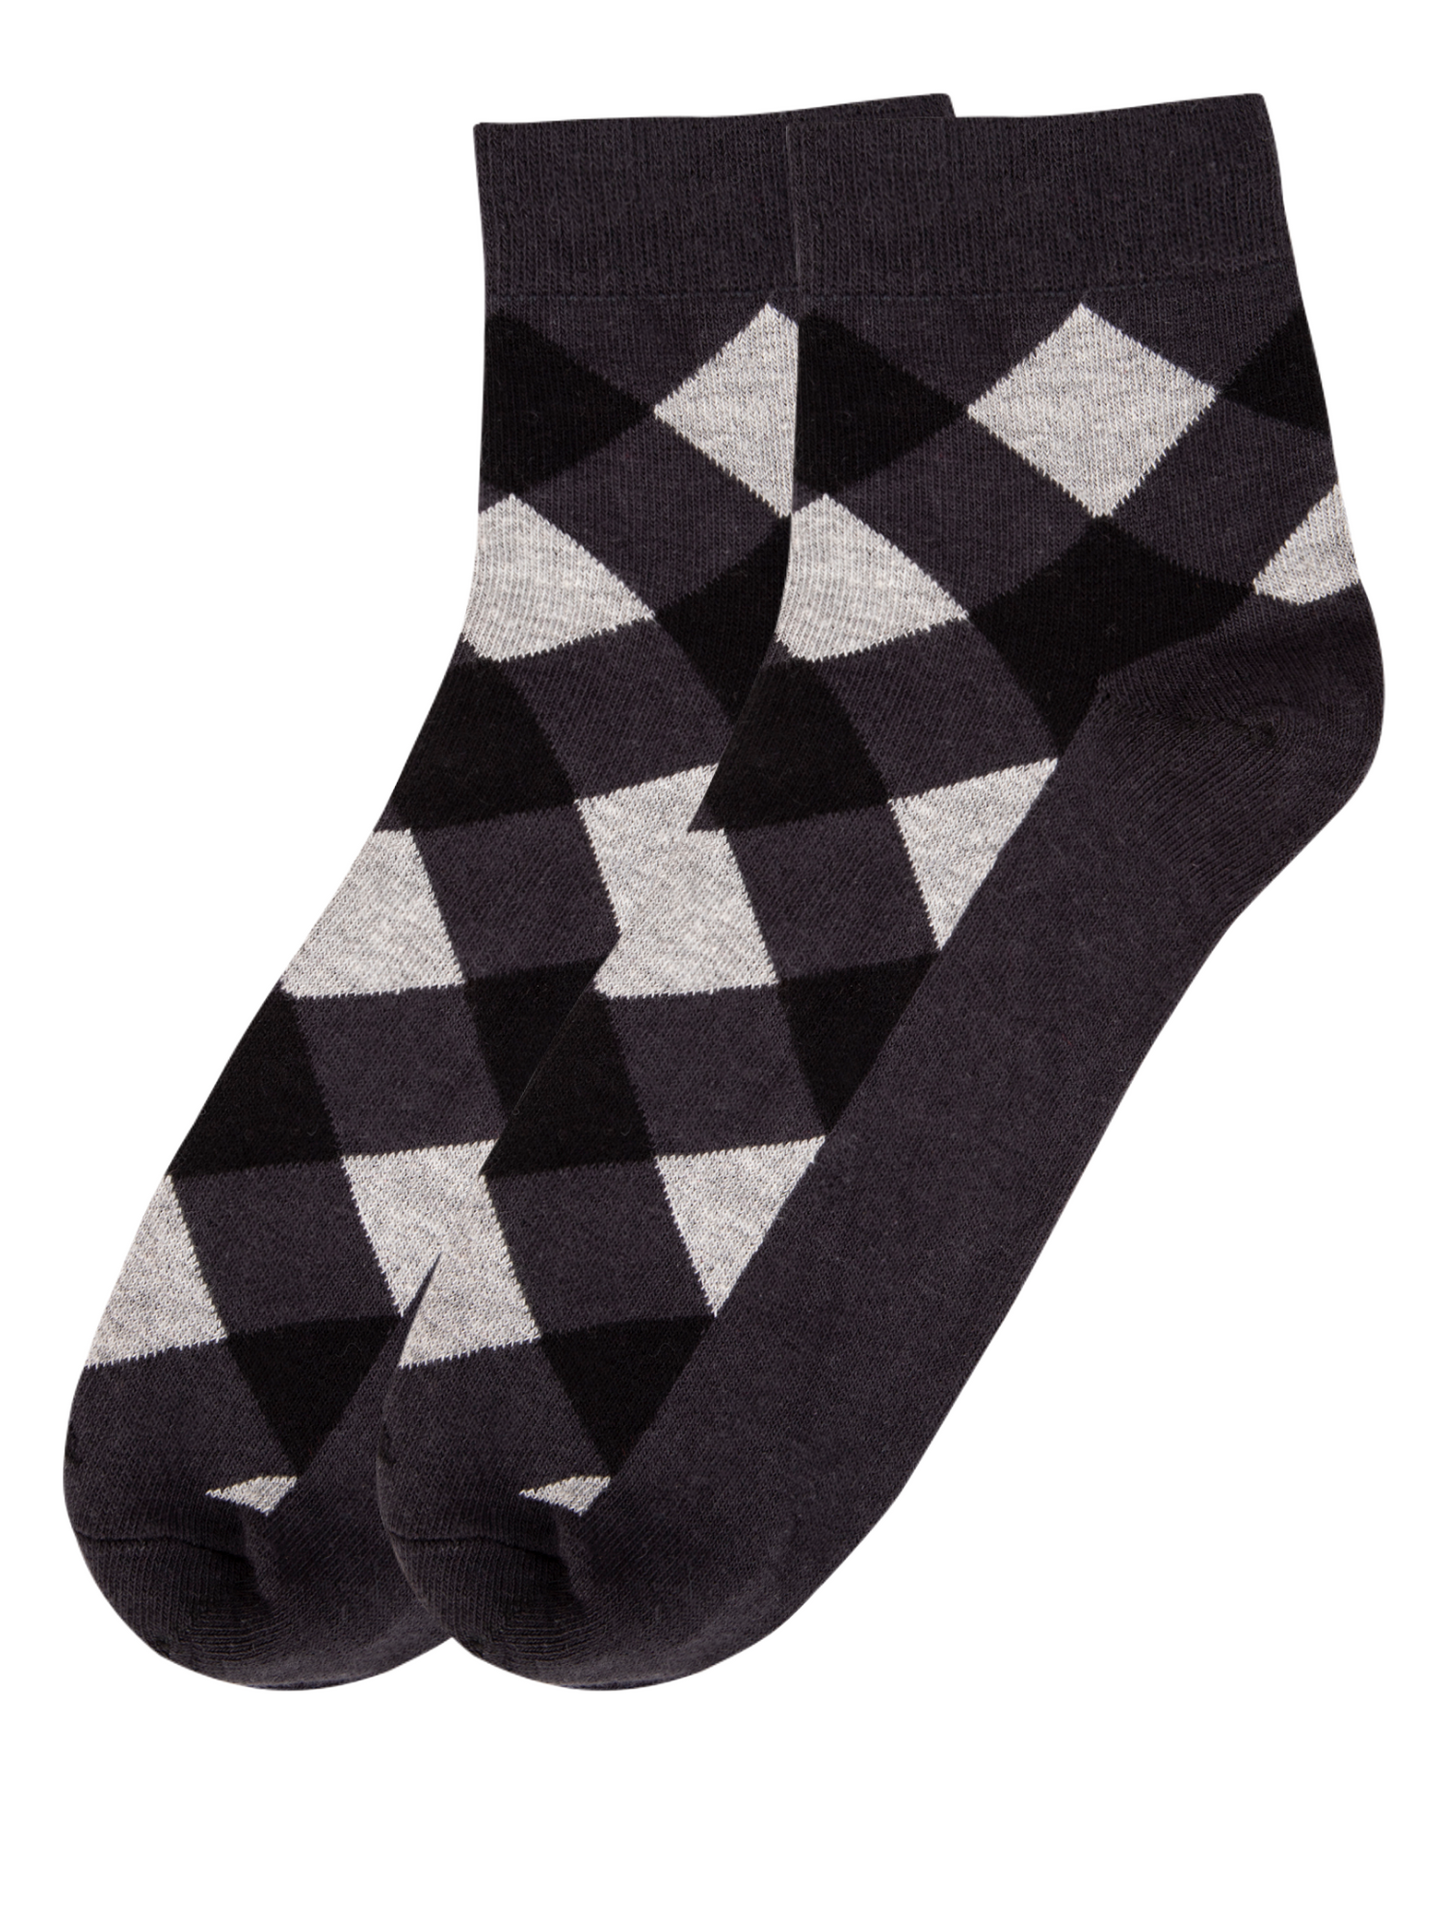 Men's Seamless Ankle Length Cotton Socks